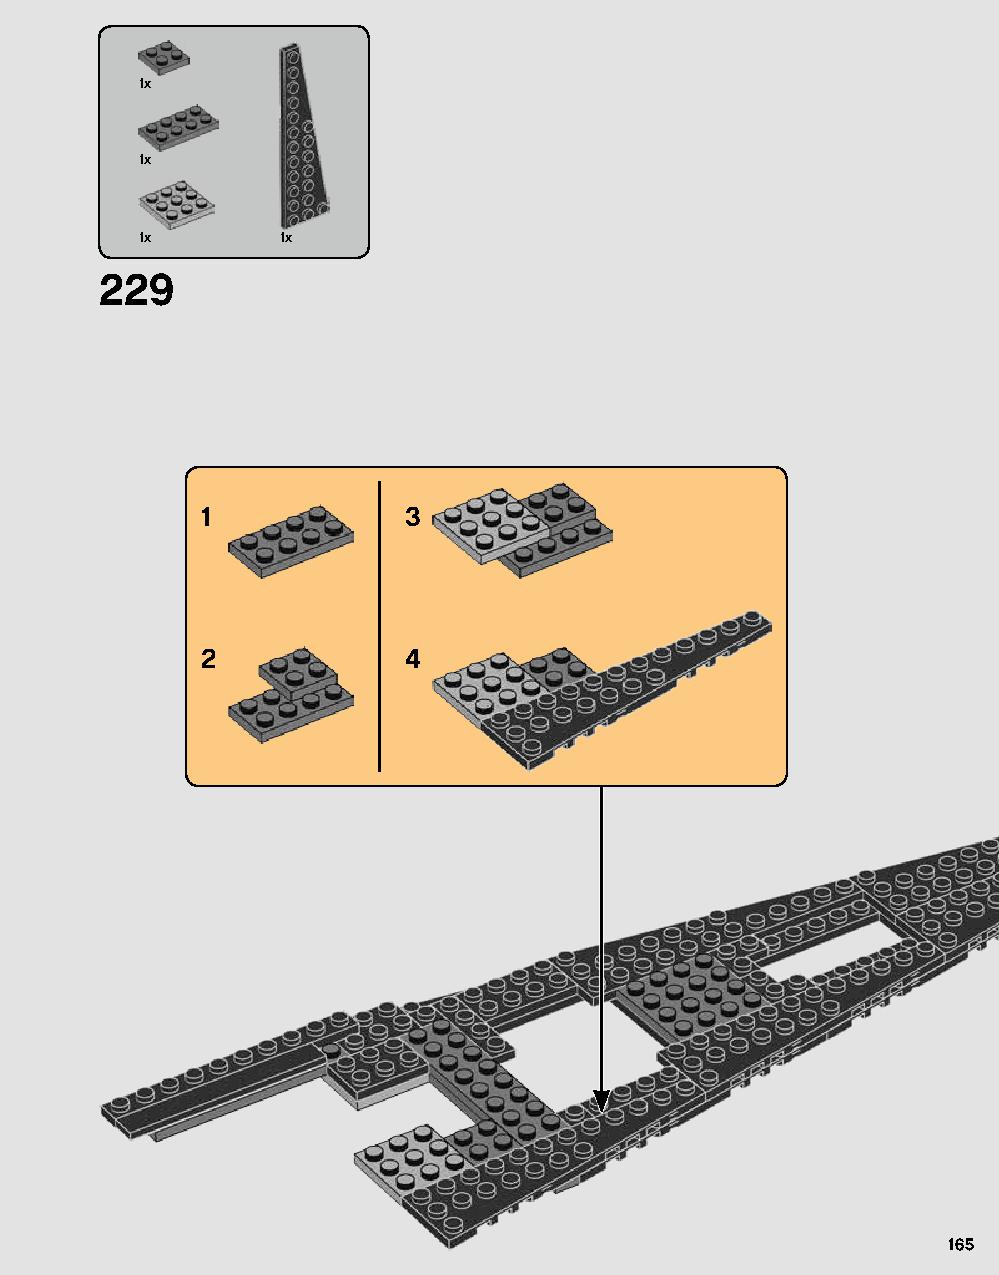 스타워즈 다스베이더 캐슬 75251 레고 세트 제품정보 레고 조립설명서 165 page